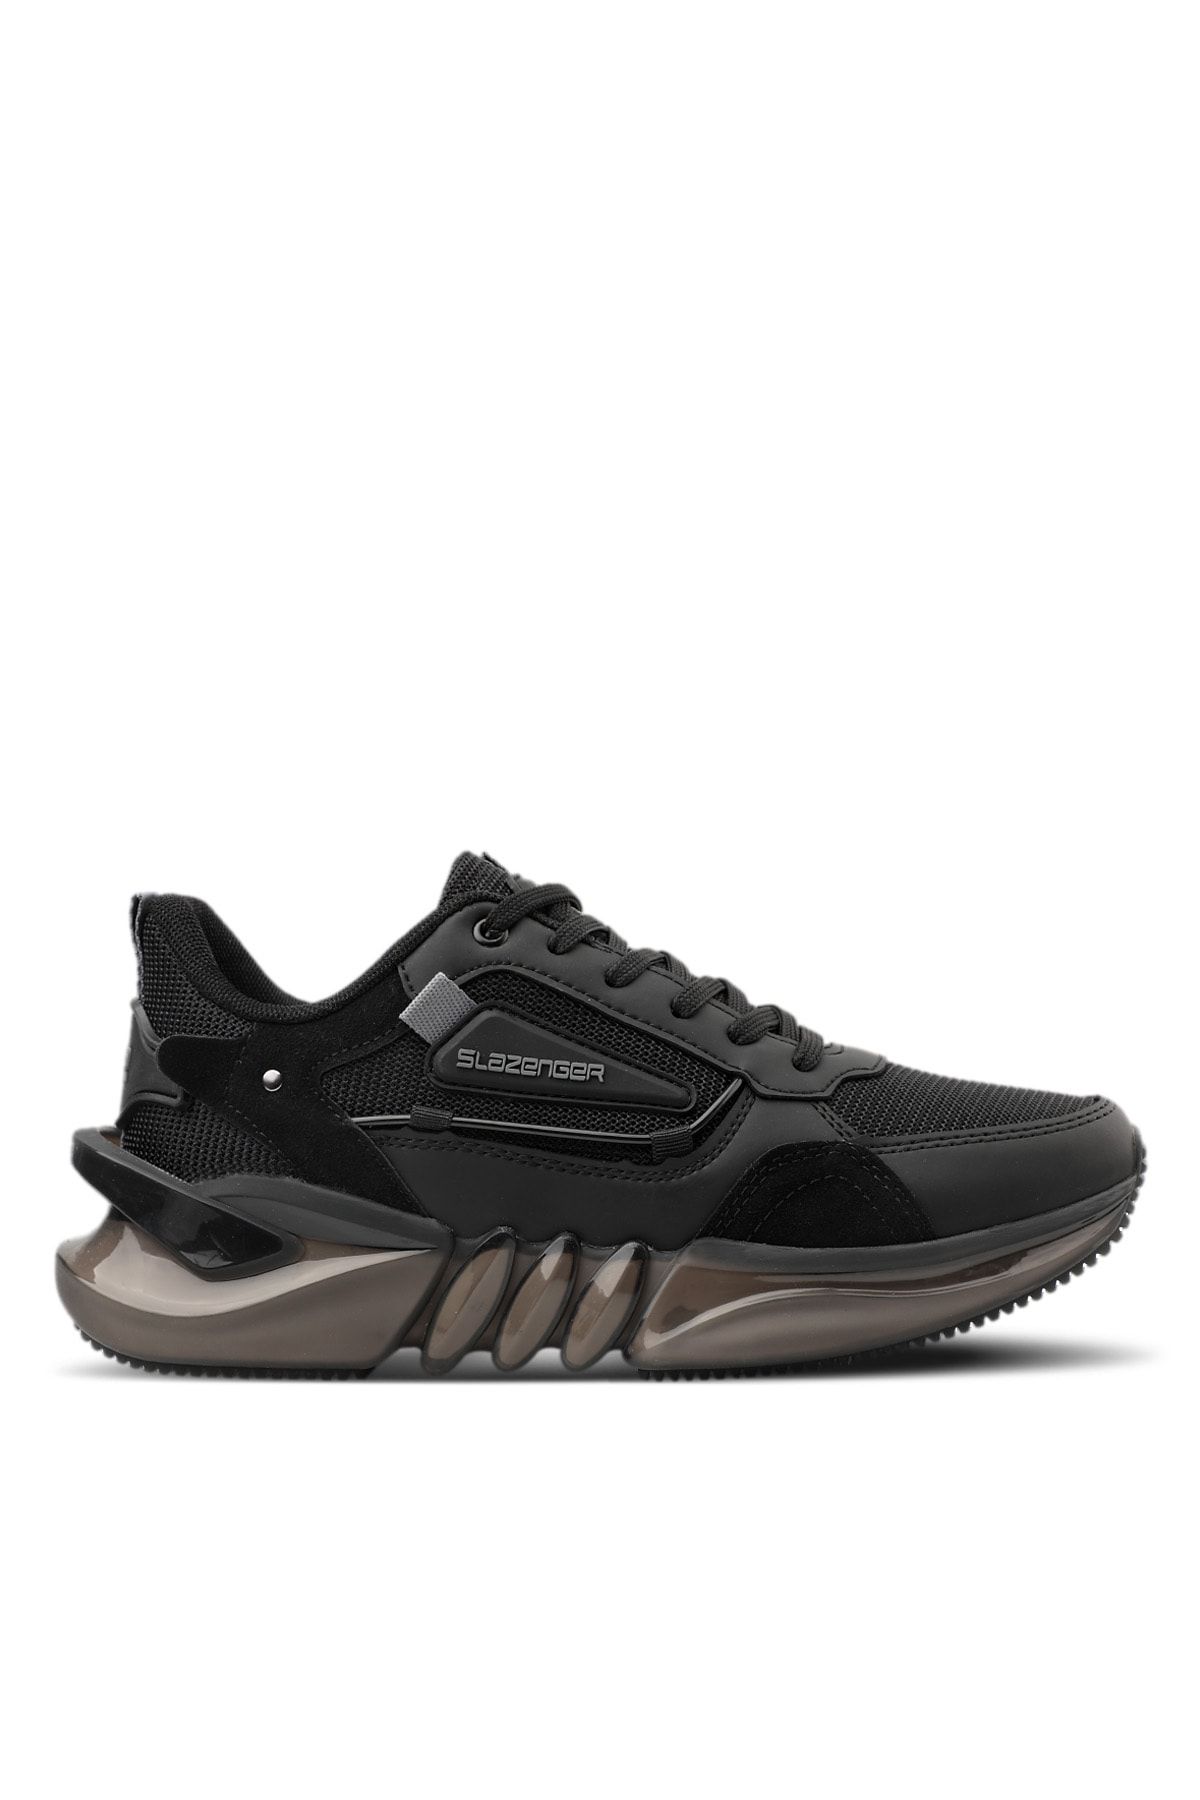 Slazenger Zenon Sneaker Erkek Ayakkabı Siyah / Siyah